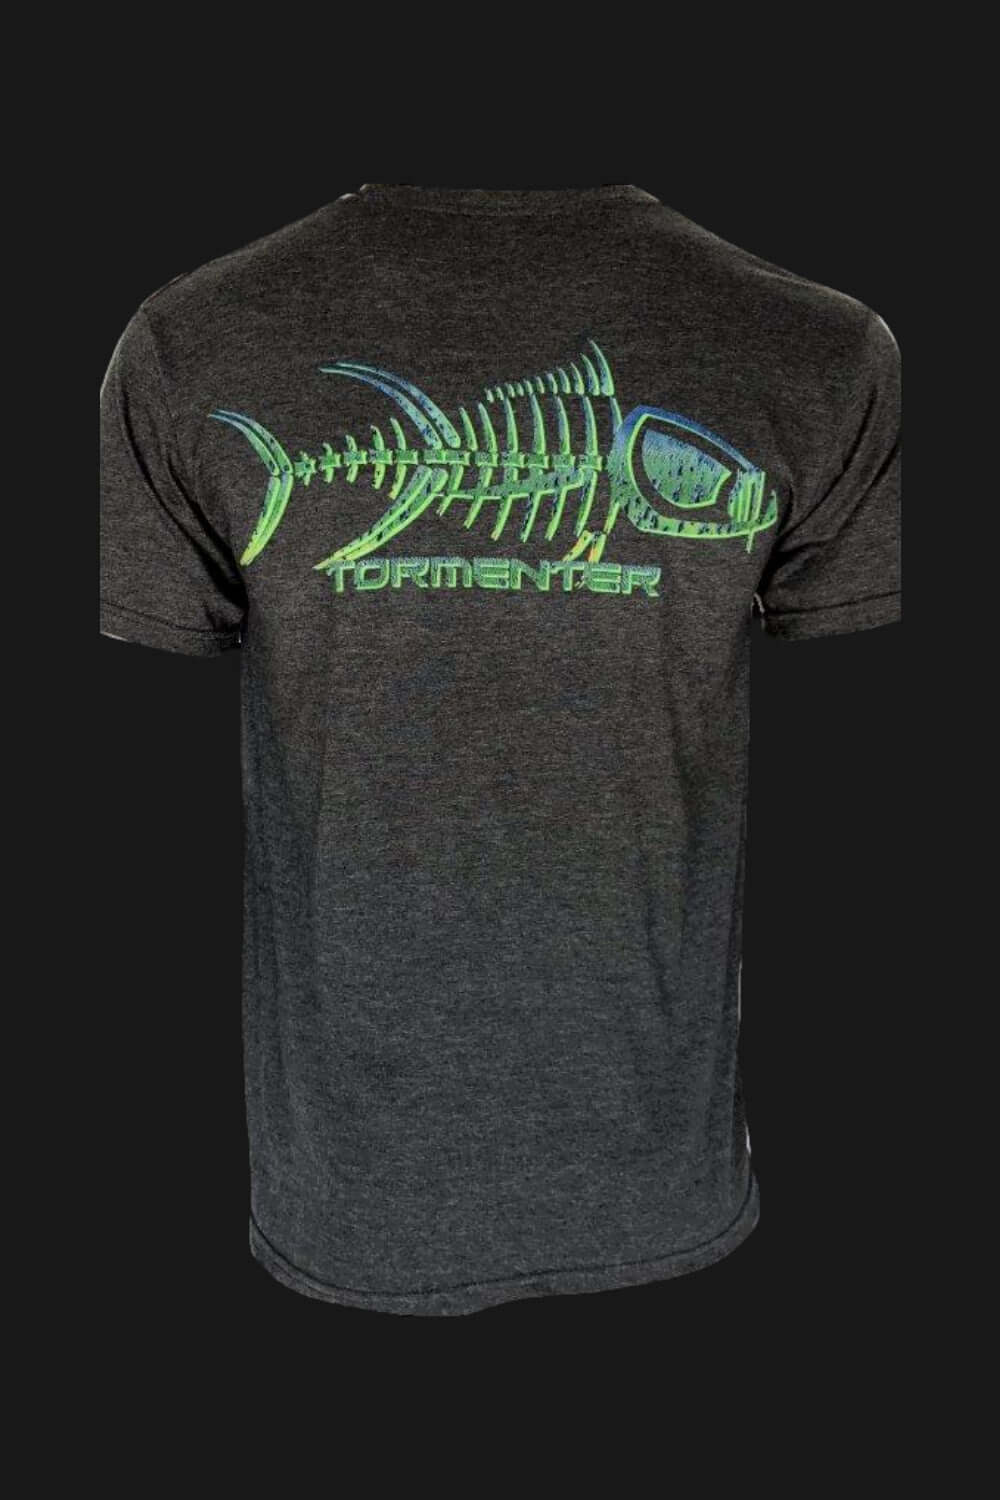 https://www.tormenterocean.com/cdn/shop/products/mahi-skin-charcoal-gray-mens-fishing-t-shirt-fishing-t-shirts-tormenter-ocean-267884.jpg?v=1706628162&width=1000